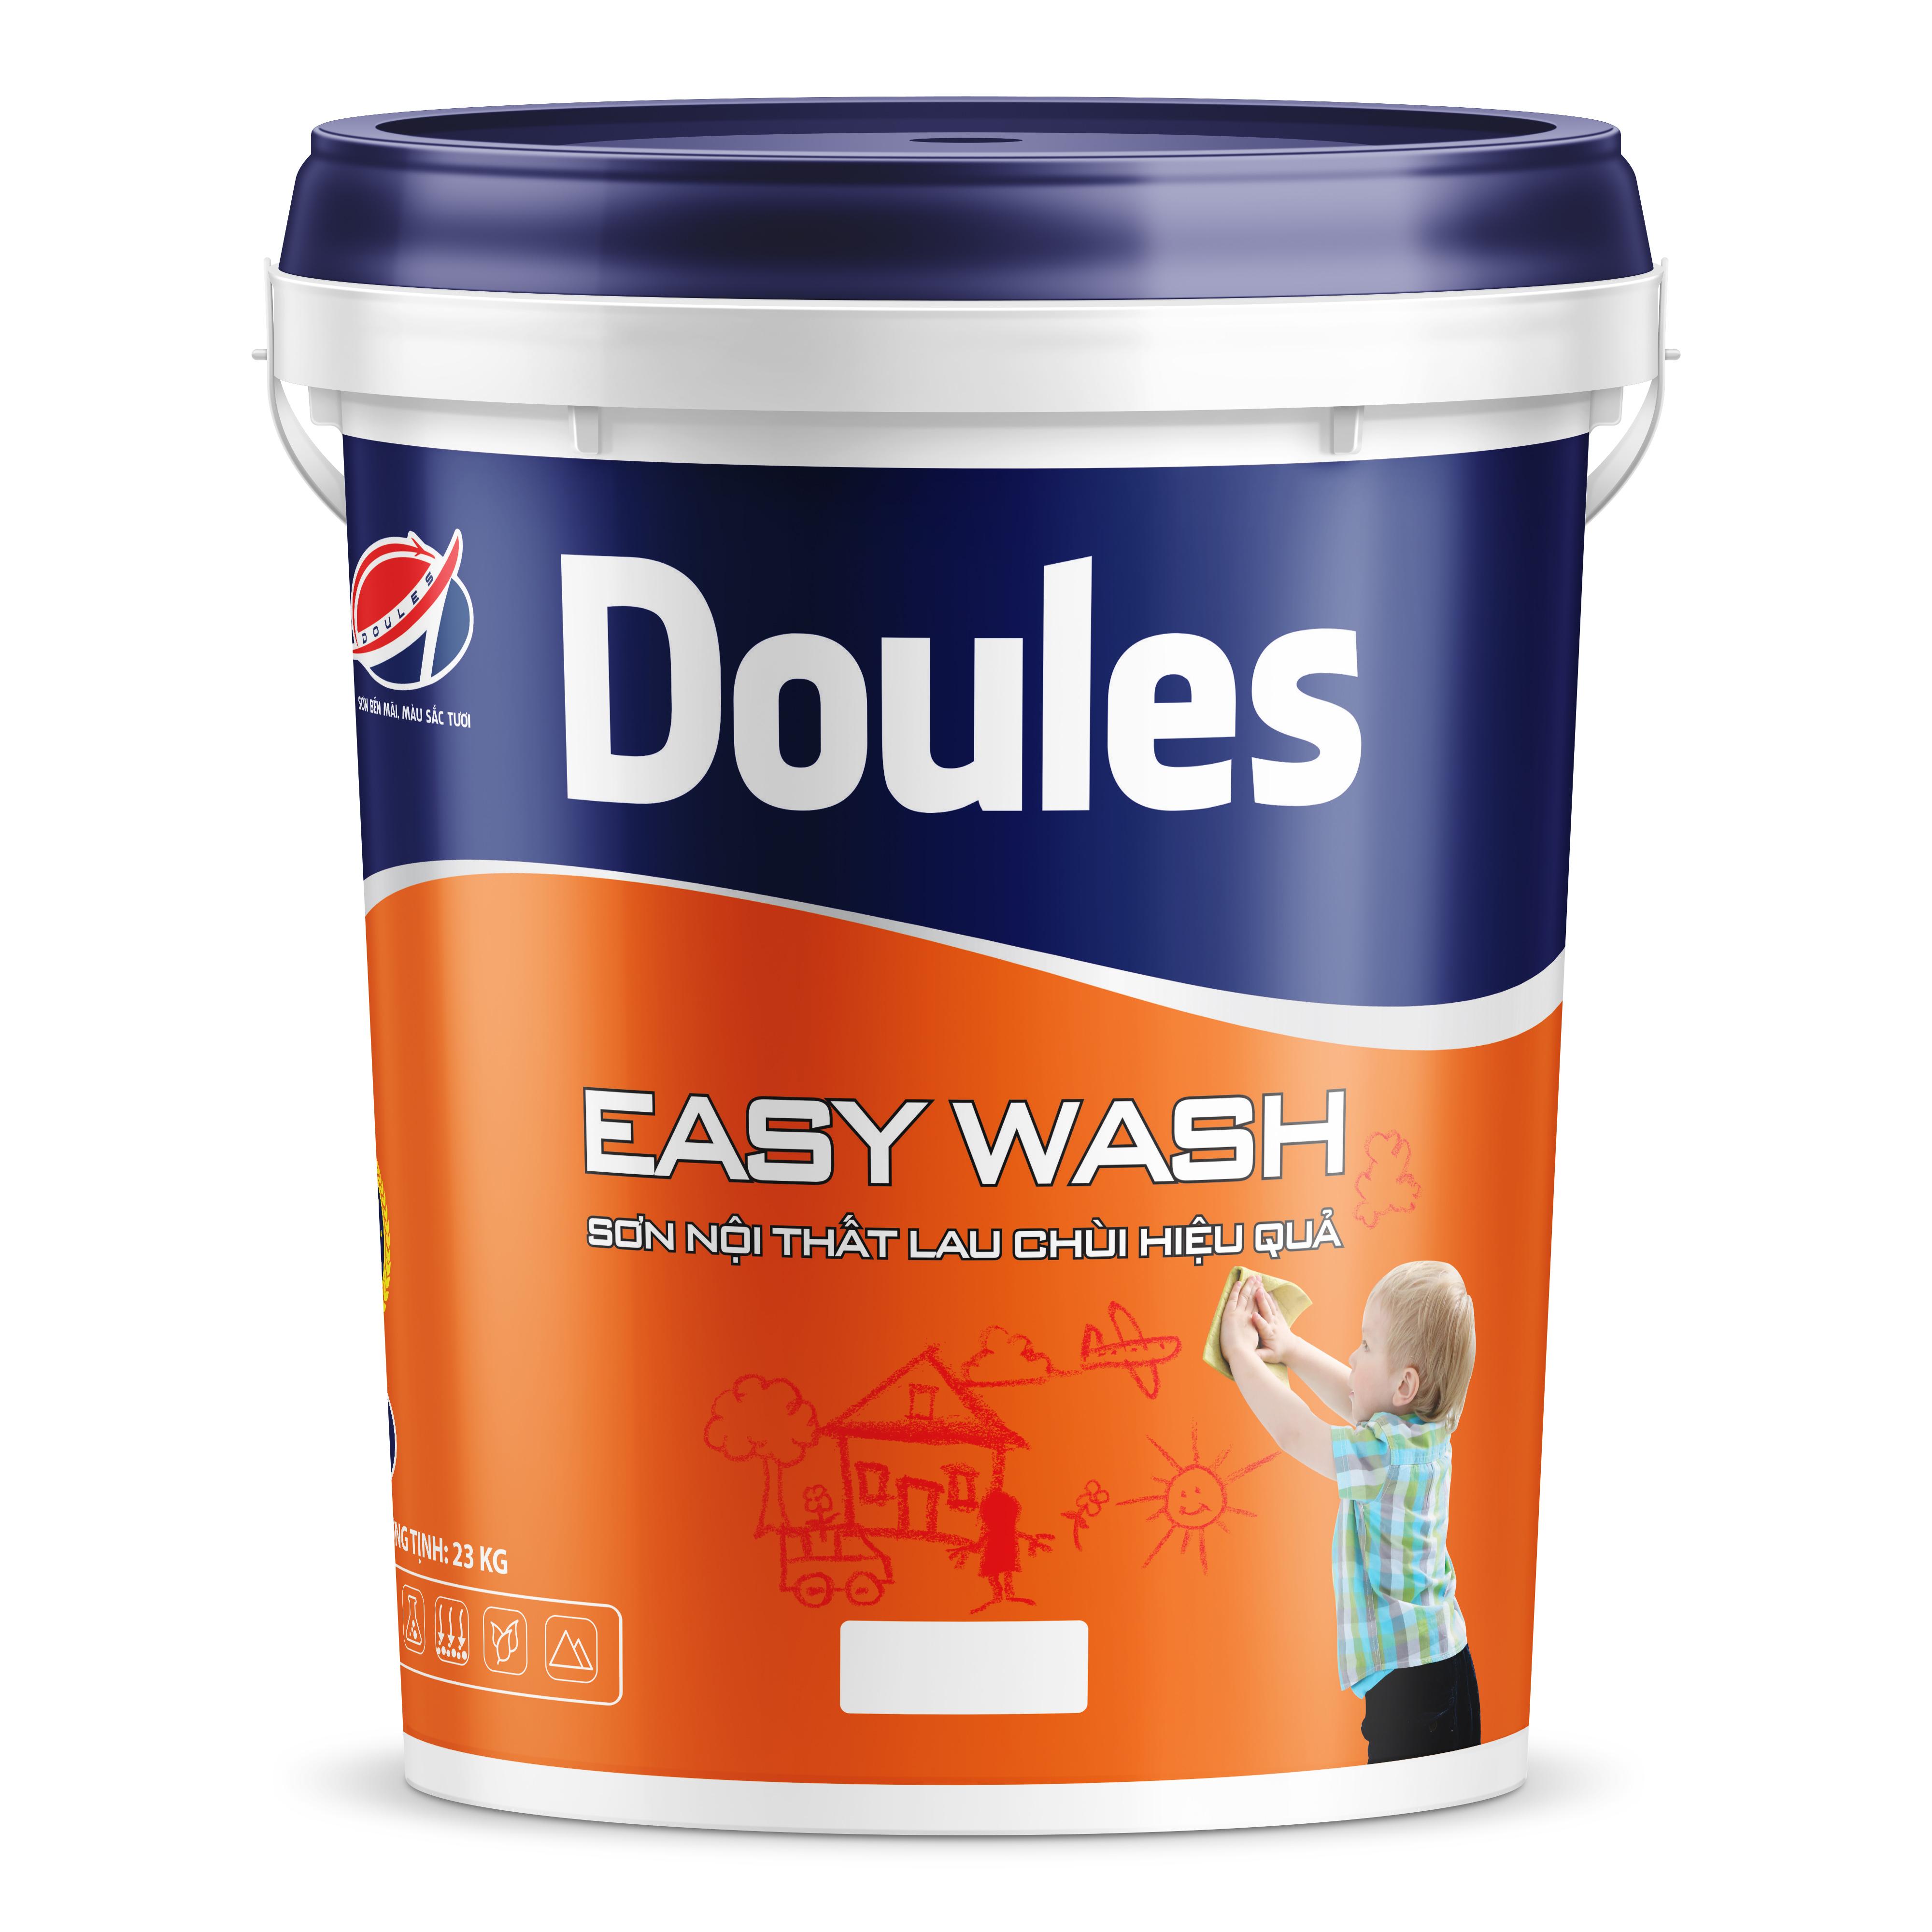 Sơn Doules Easy Wash nội thất lau chùi